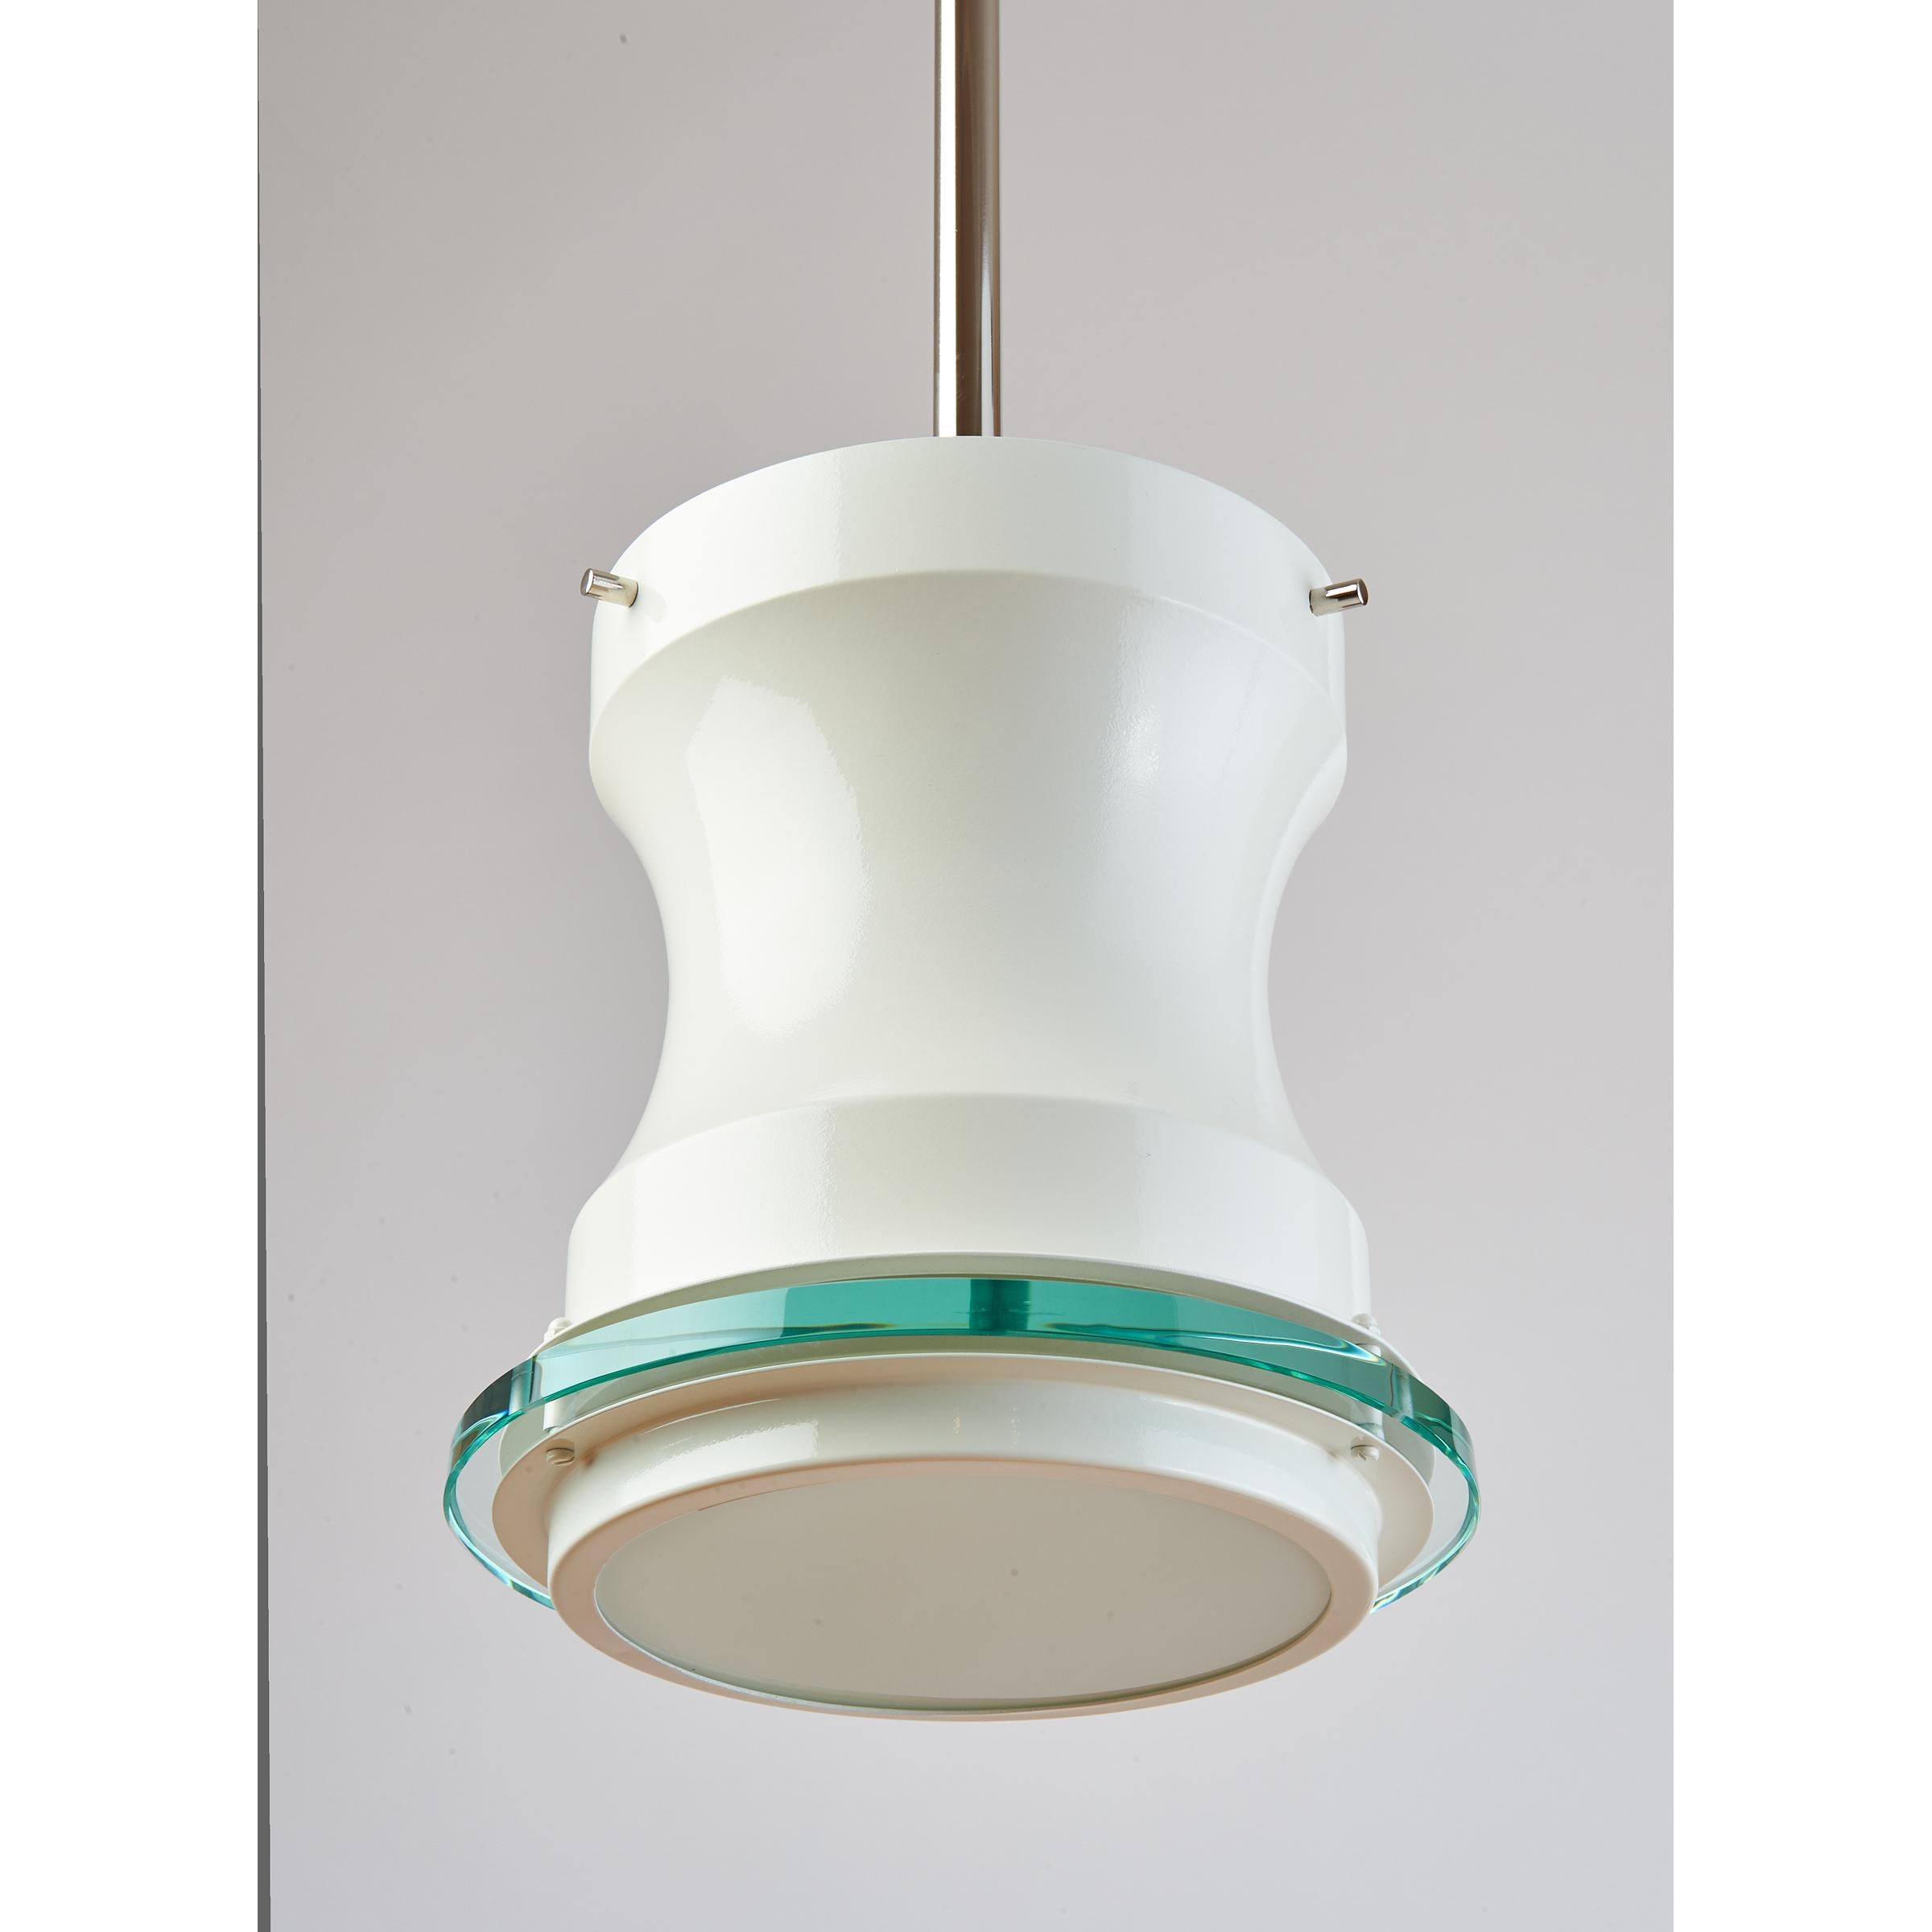 Stilnovo, années 1960
Deux lanternes émaillées blanches avec diffuseurs en verre clair et opalin, montures nickelées. Peut être monté comme plafonnier.
Câblée pour les États-Unis avec une ampoule à culot standard, jusqu'à 100 W
Italie, années